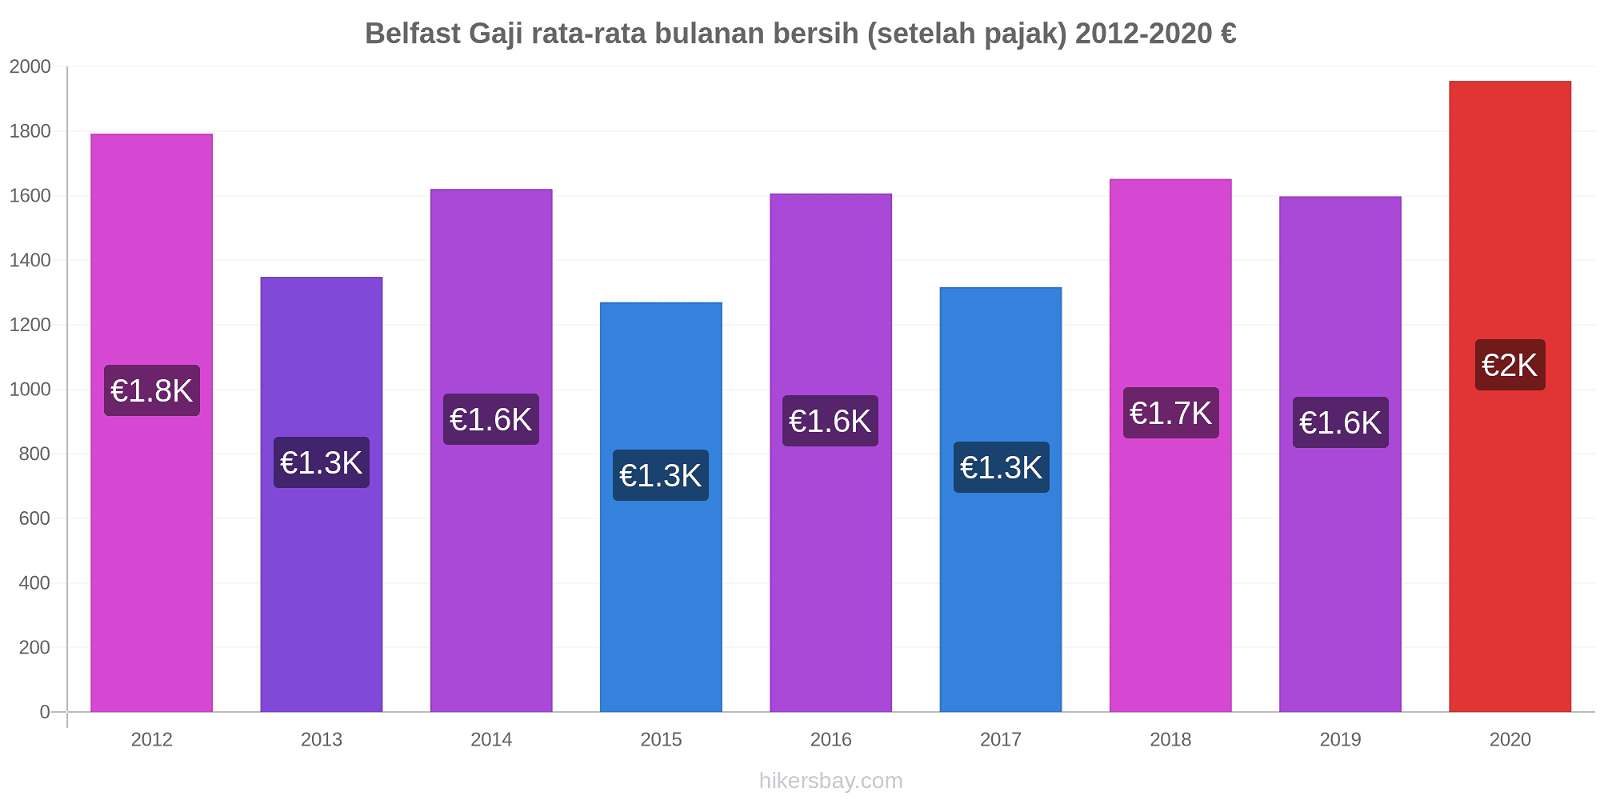 Belfast perubahan harga Gaji rata-rata bulanan bersih (setelah pajak) hikersbay.com